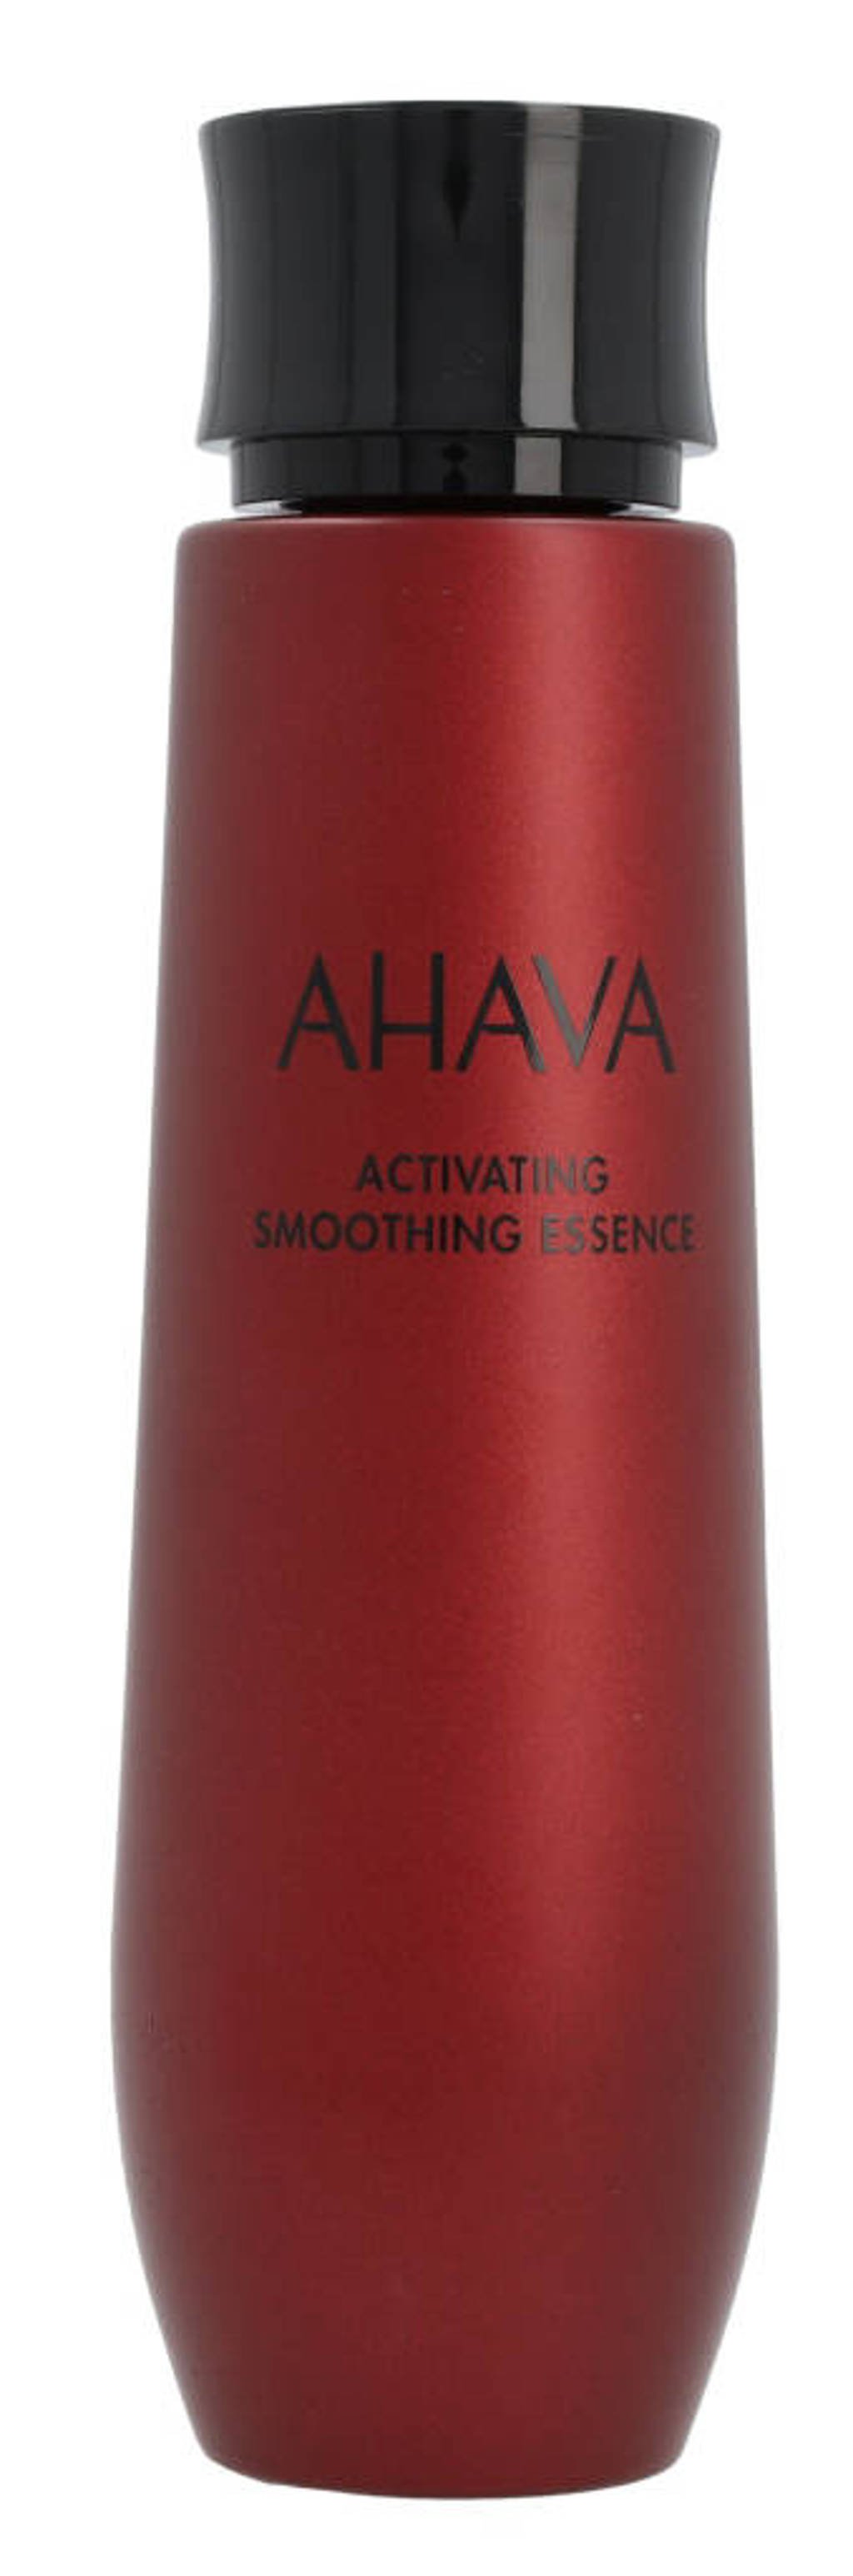 Ahava Activating Smoothing Essence gezichtsserum - 100 ml